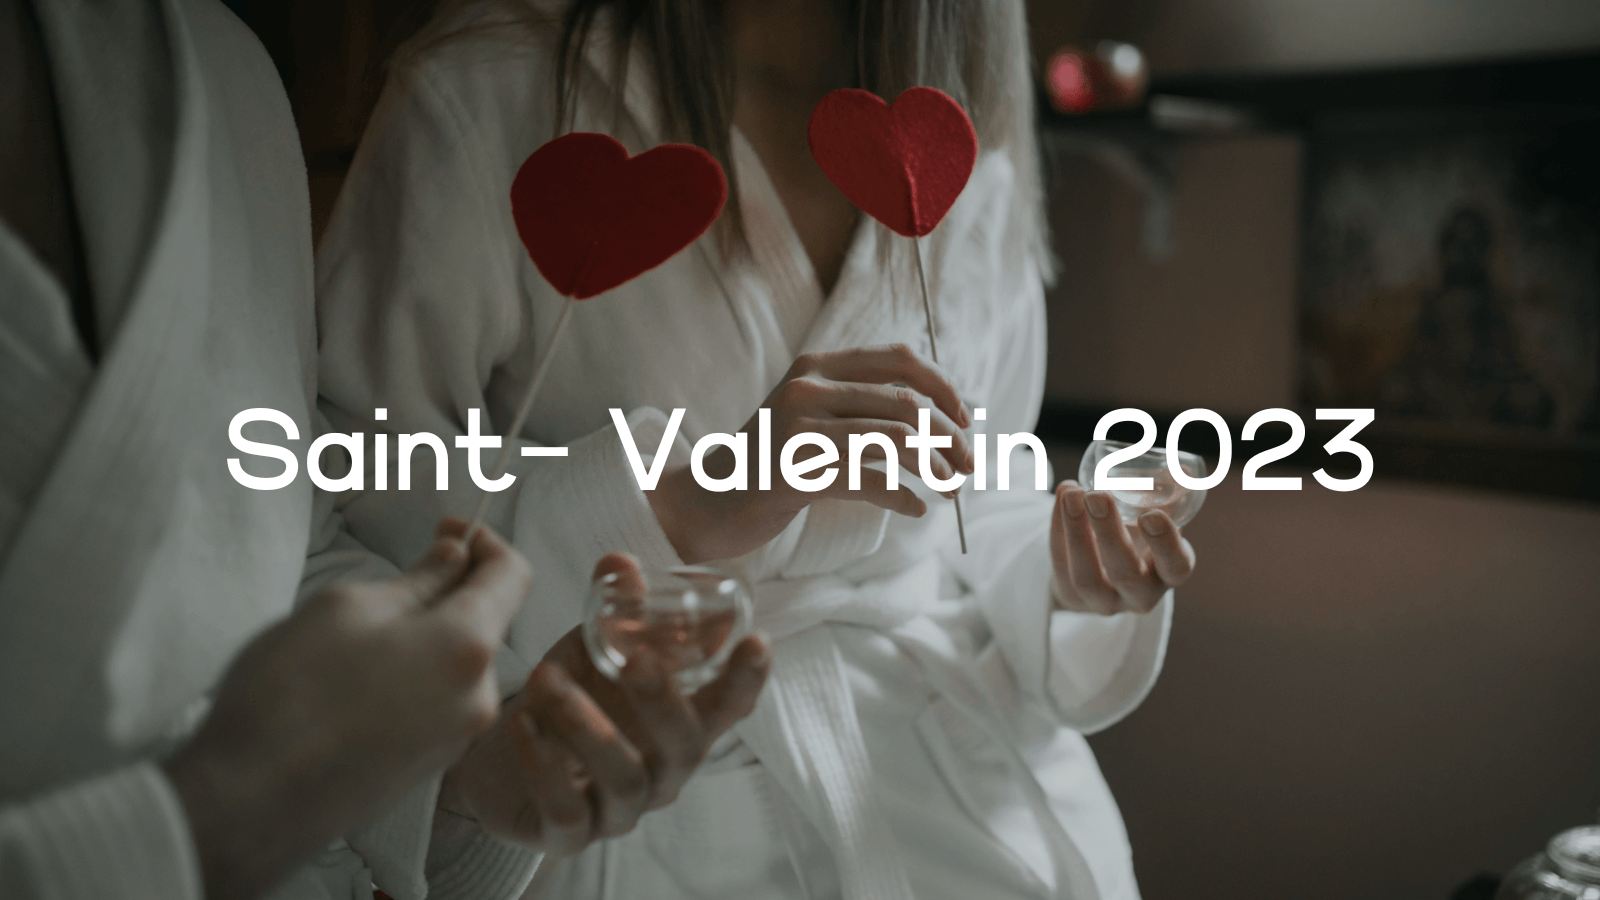 Saint Valentin 2023